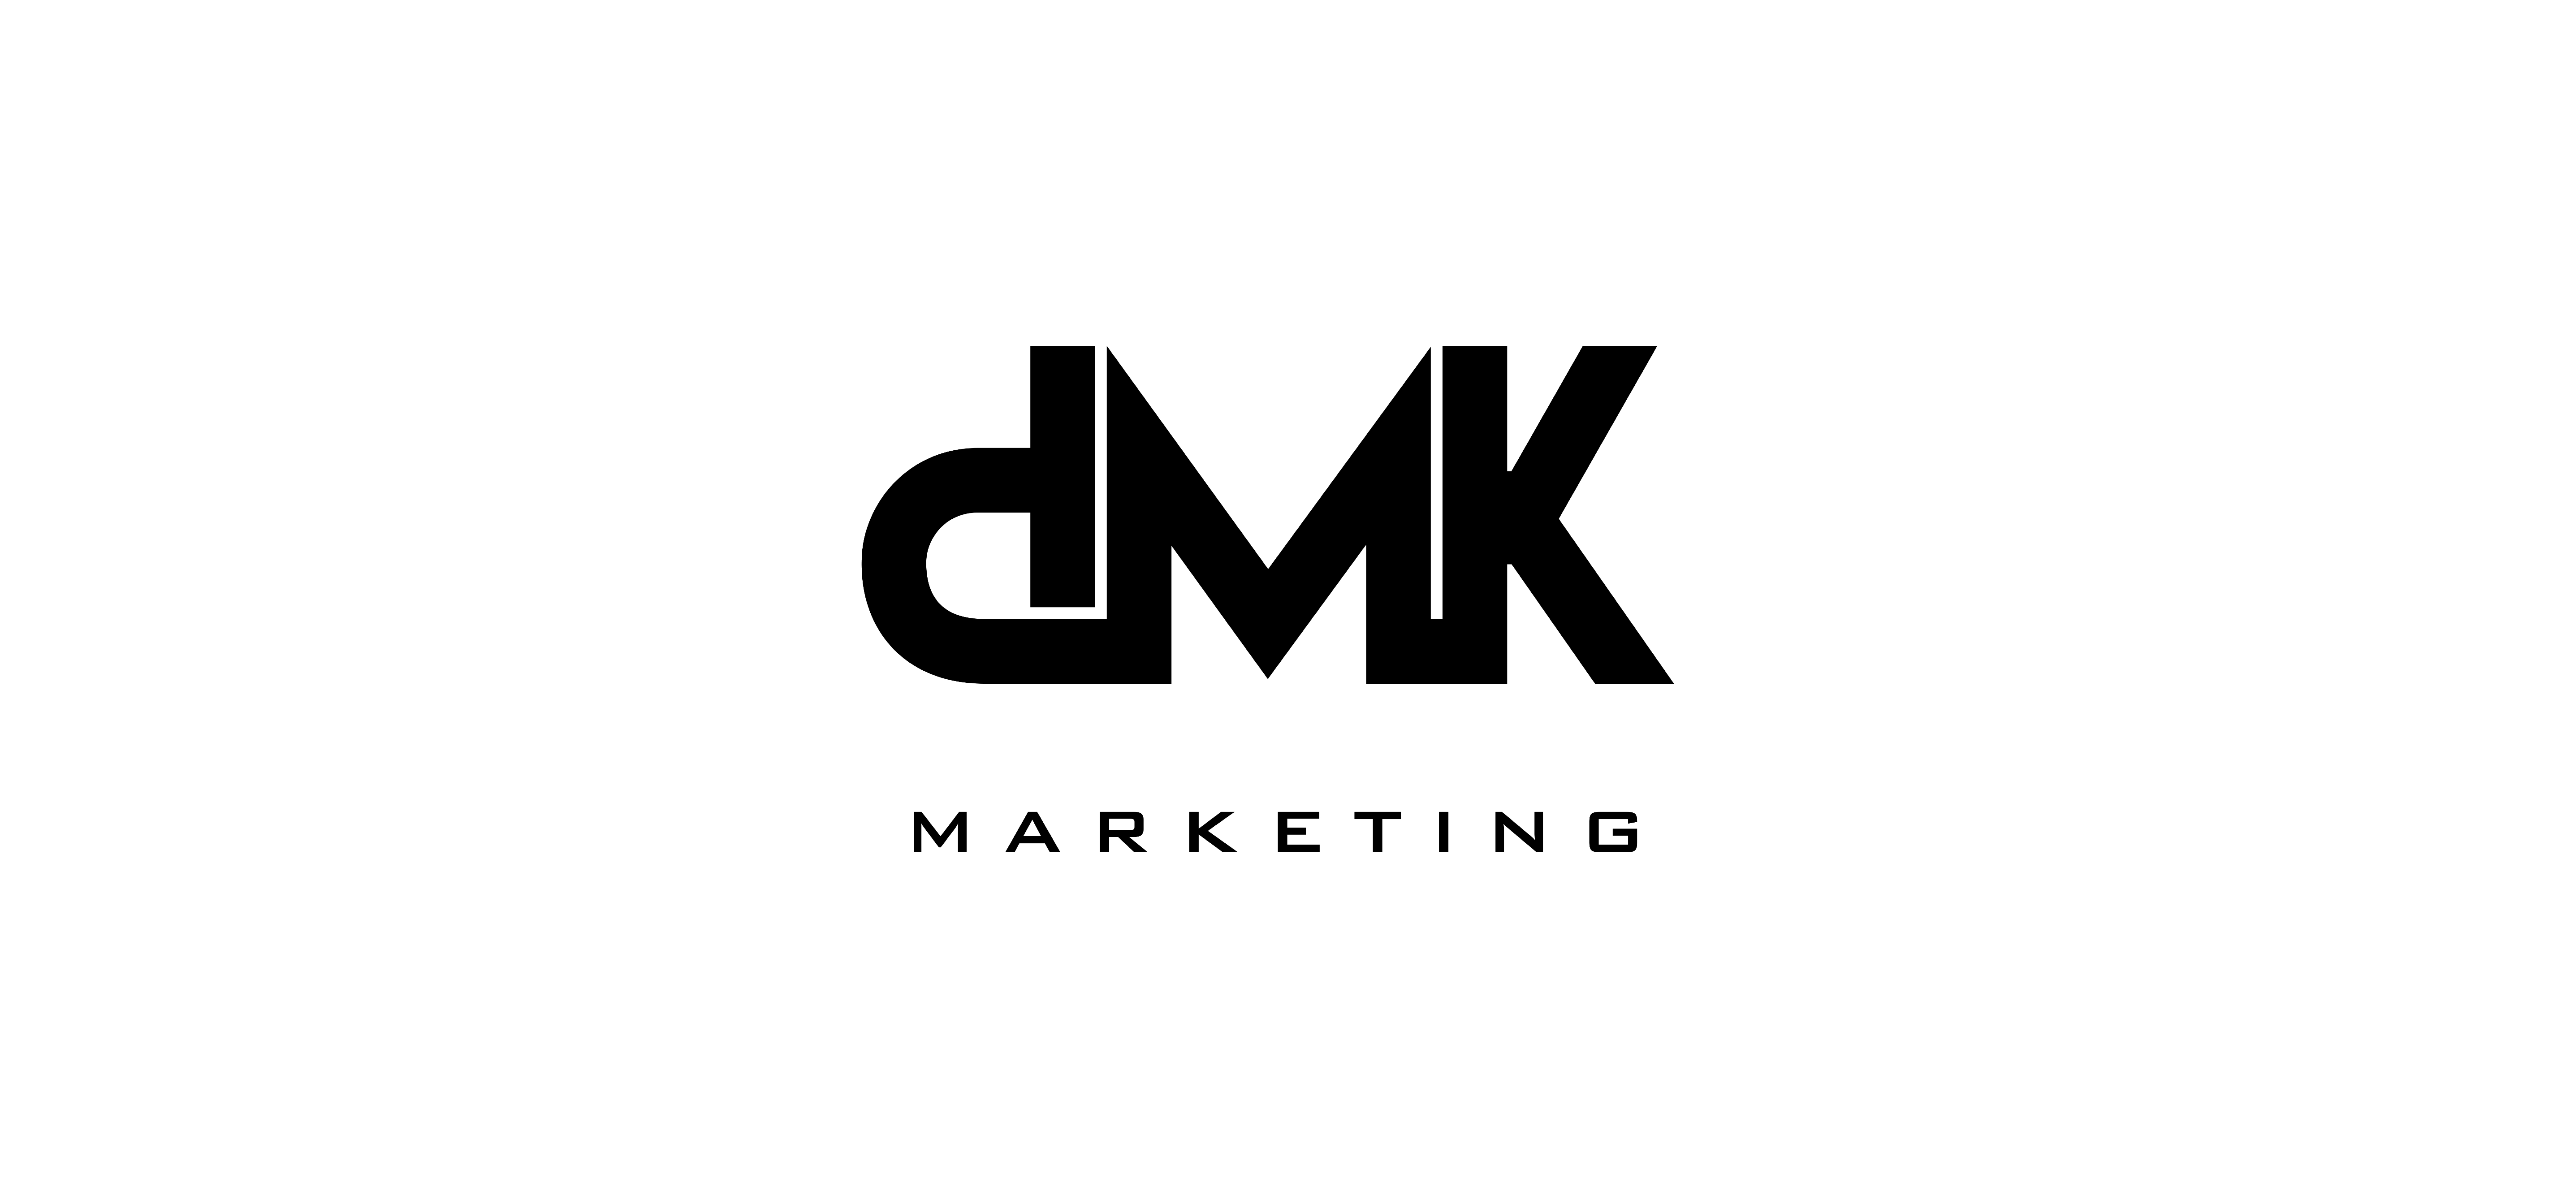 Dmk Logo PNG Images, Transparent Dmk Logo Image Download - PNGitem